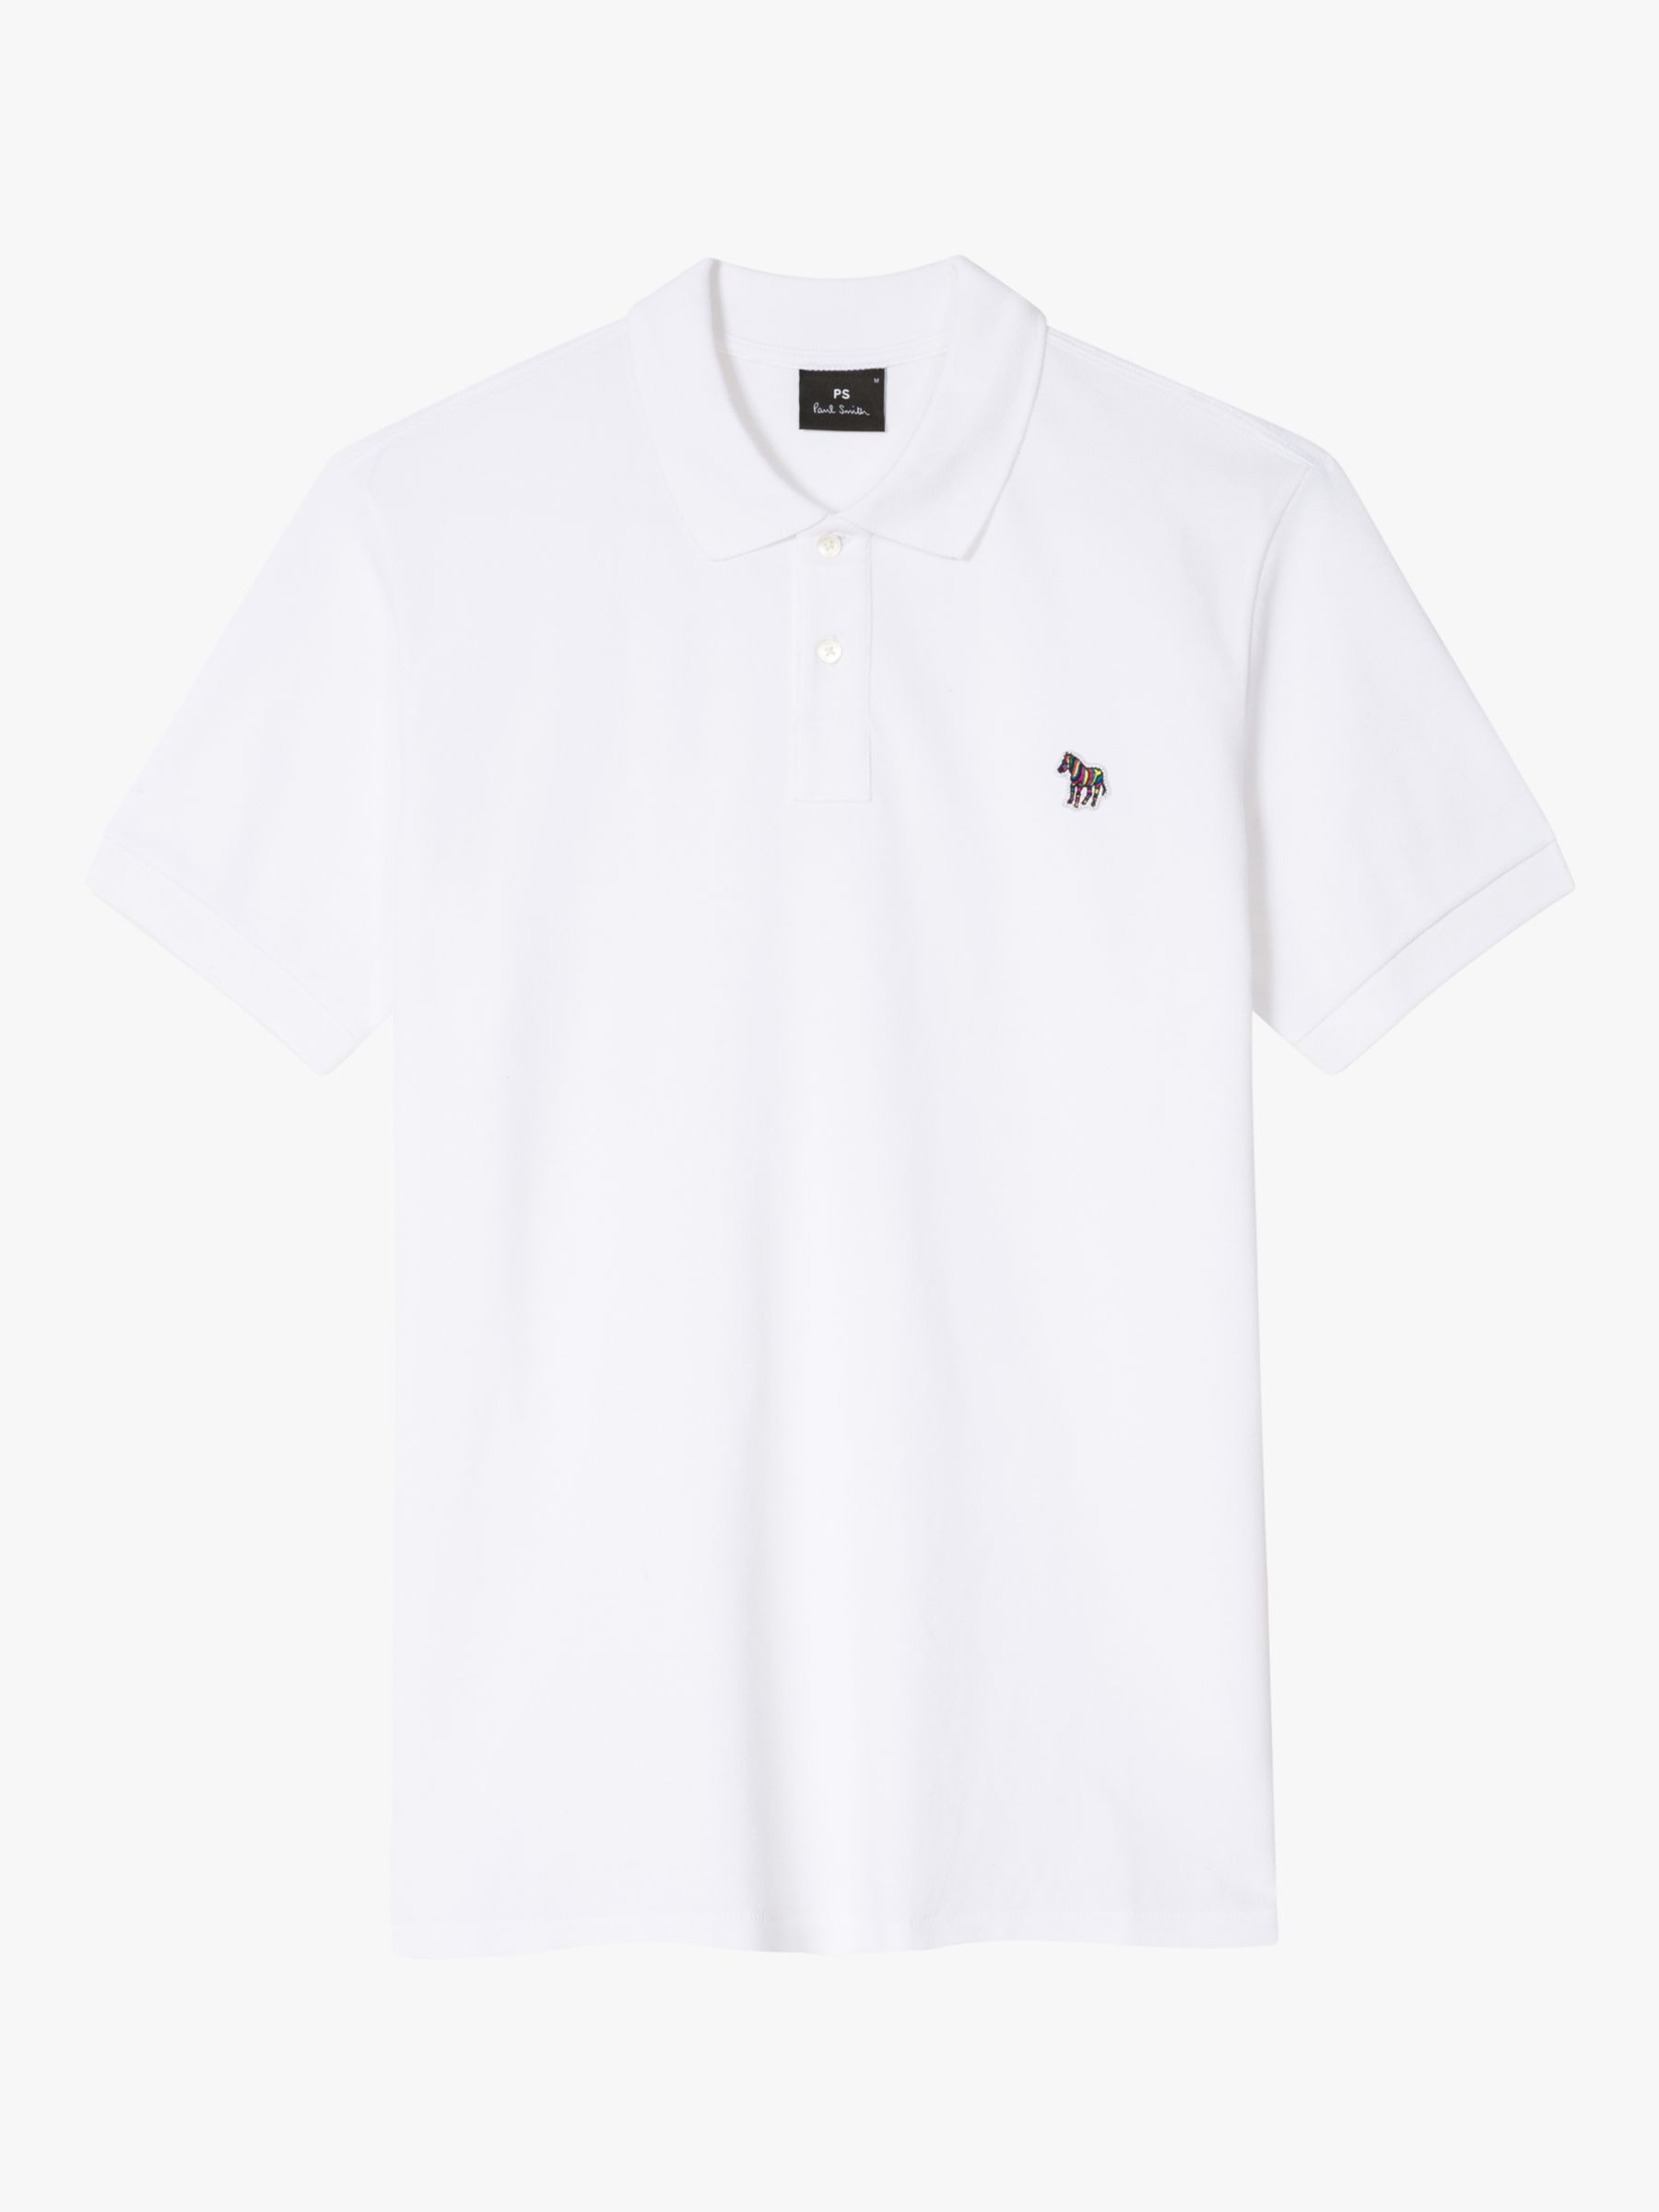 Paul Smith Zebra Applique Organic Cotton Polo Shirt, Whites, S